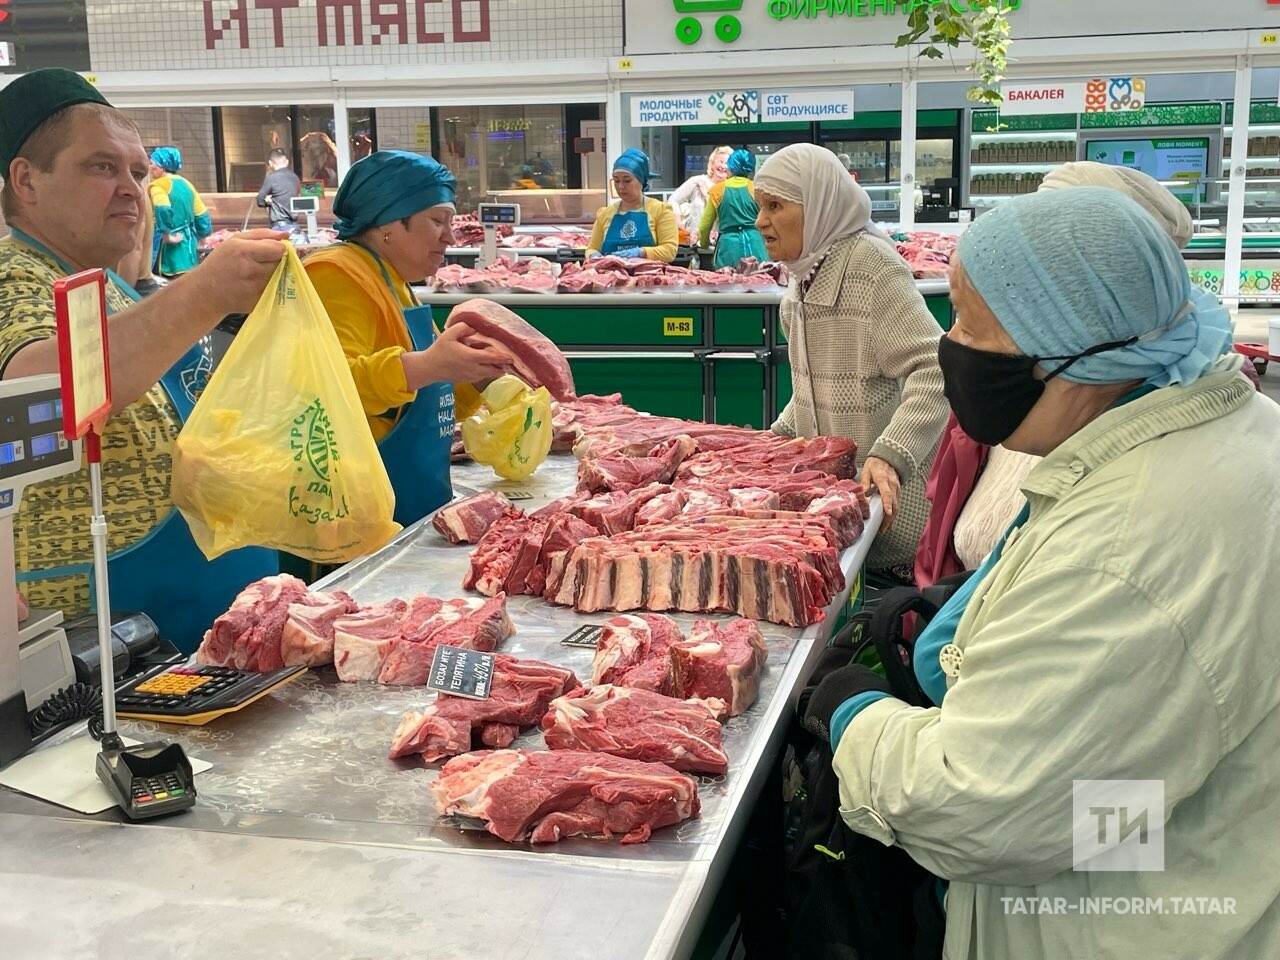 Halal Market турында халык: Хәләл продукция бик кирәк, андый җирдән ышанып алабыз